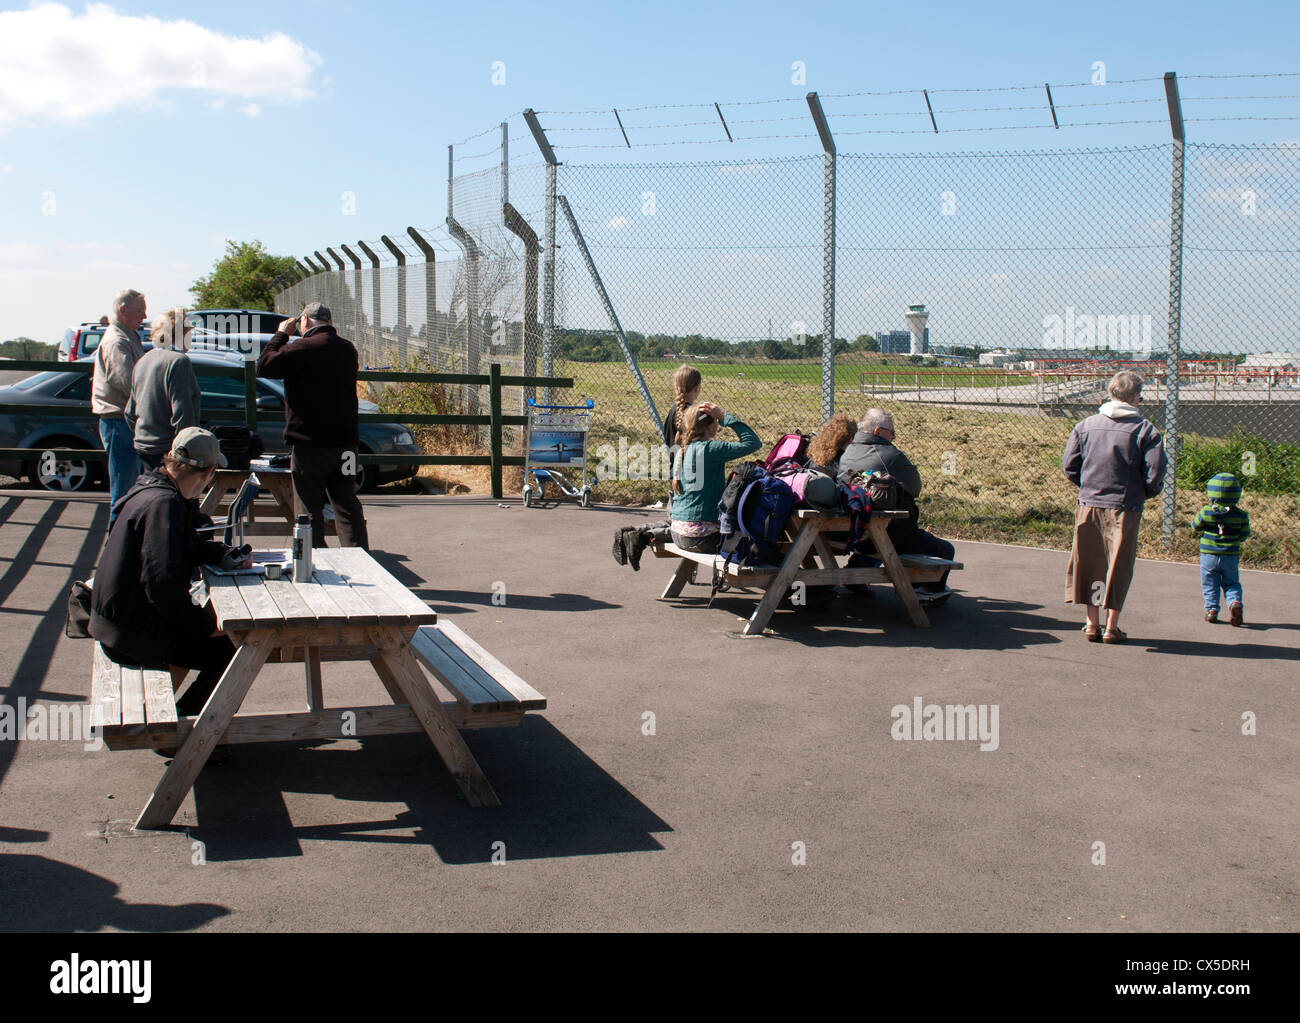 Public viewing area, Birmingham Airport, UK Stock Photo